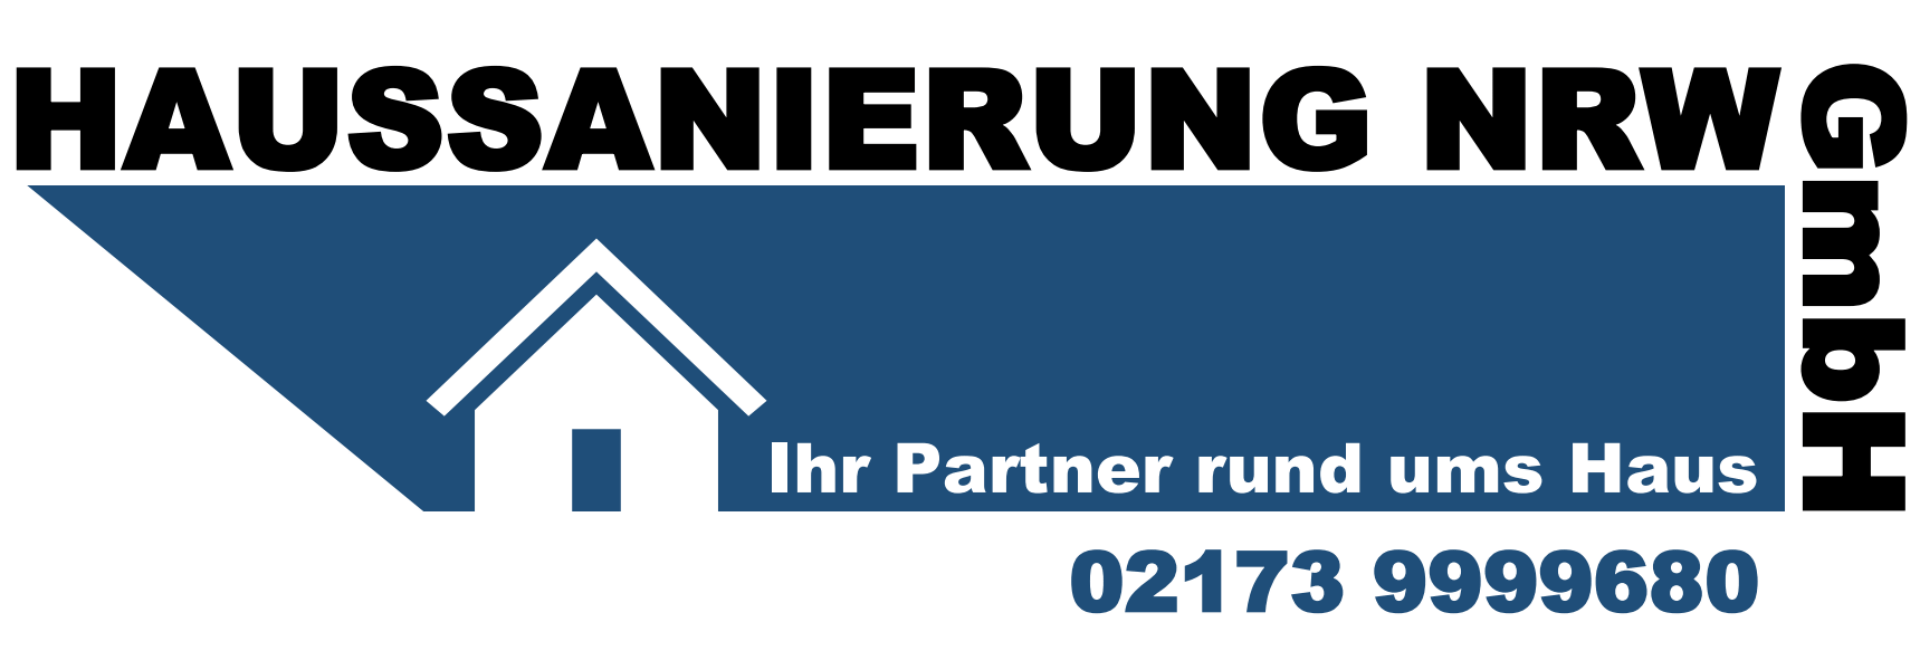 Haussanierung NRW GmbH - Logo